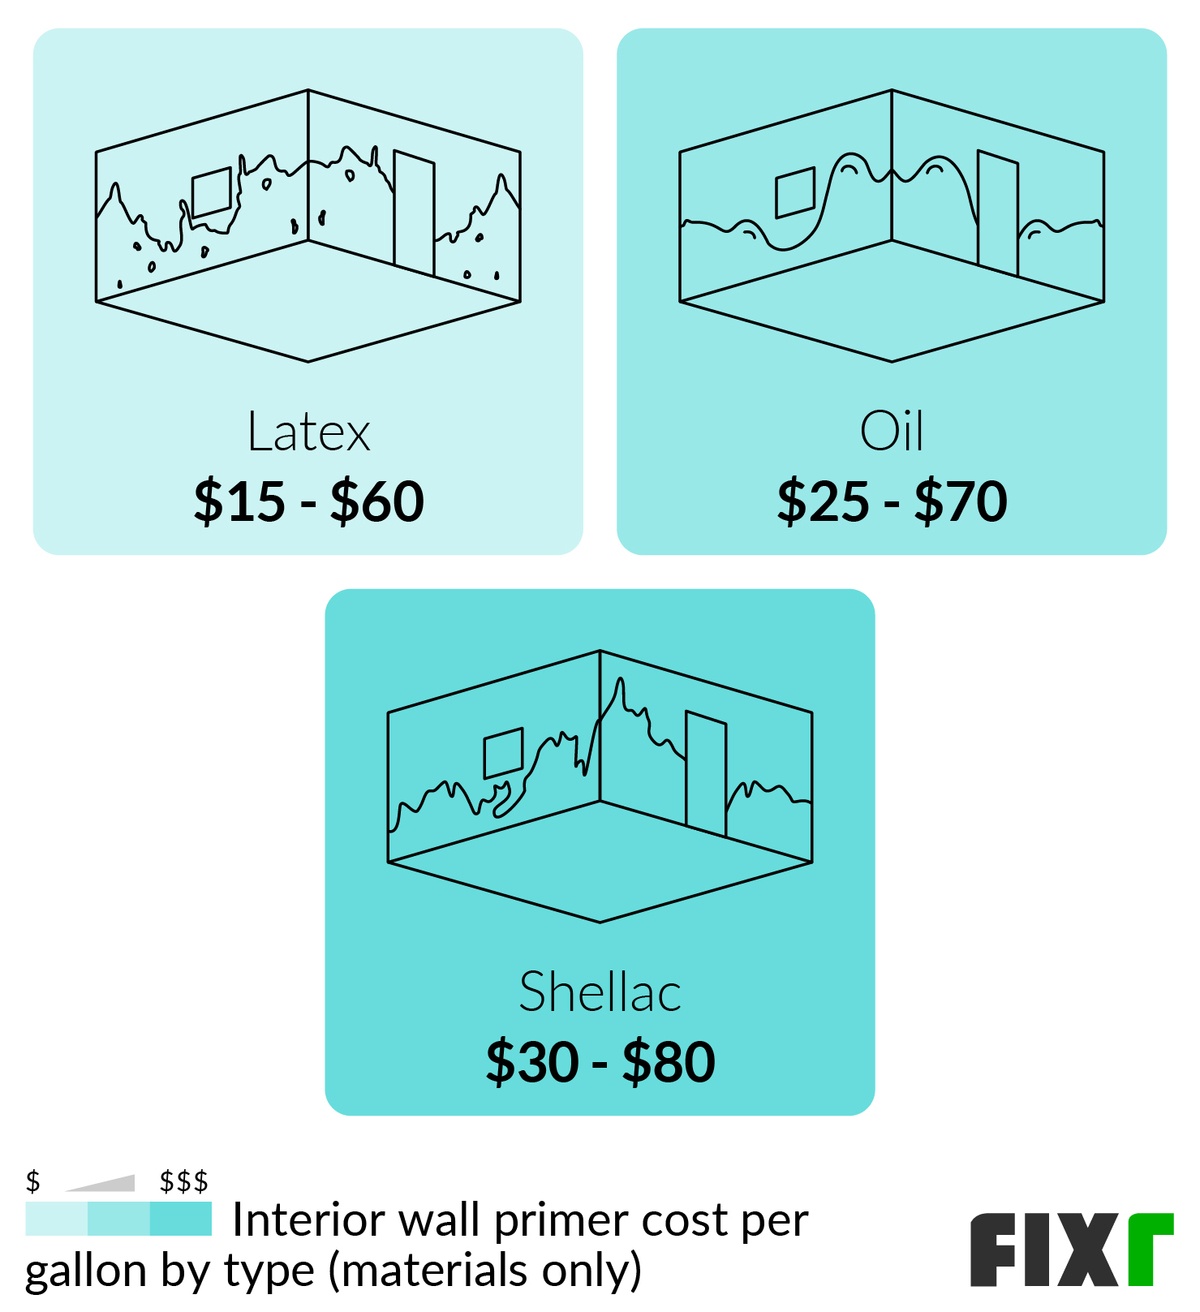 Cost per gallon of latex, oil, and shellac interior wall primer